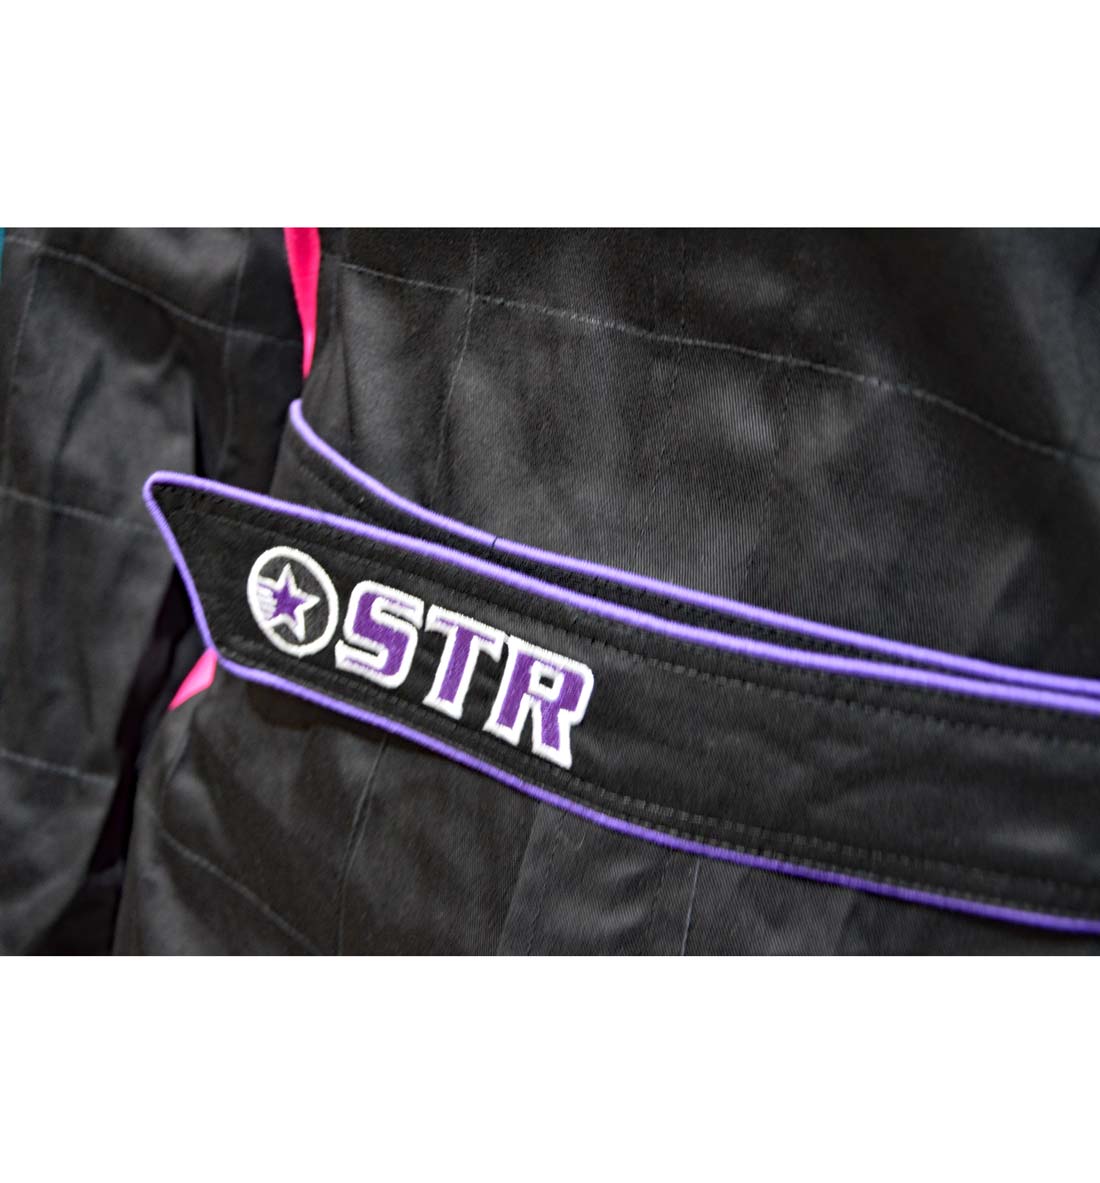 STR Youth 'Podium' Race Suit - Black/Pink/Purple